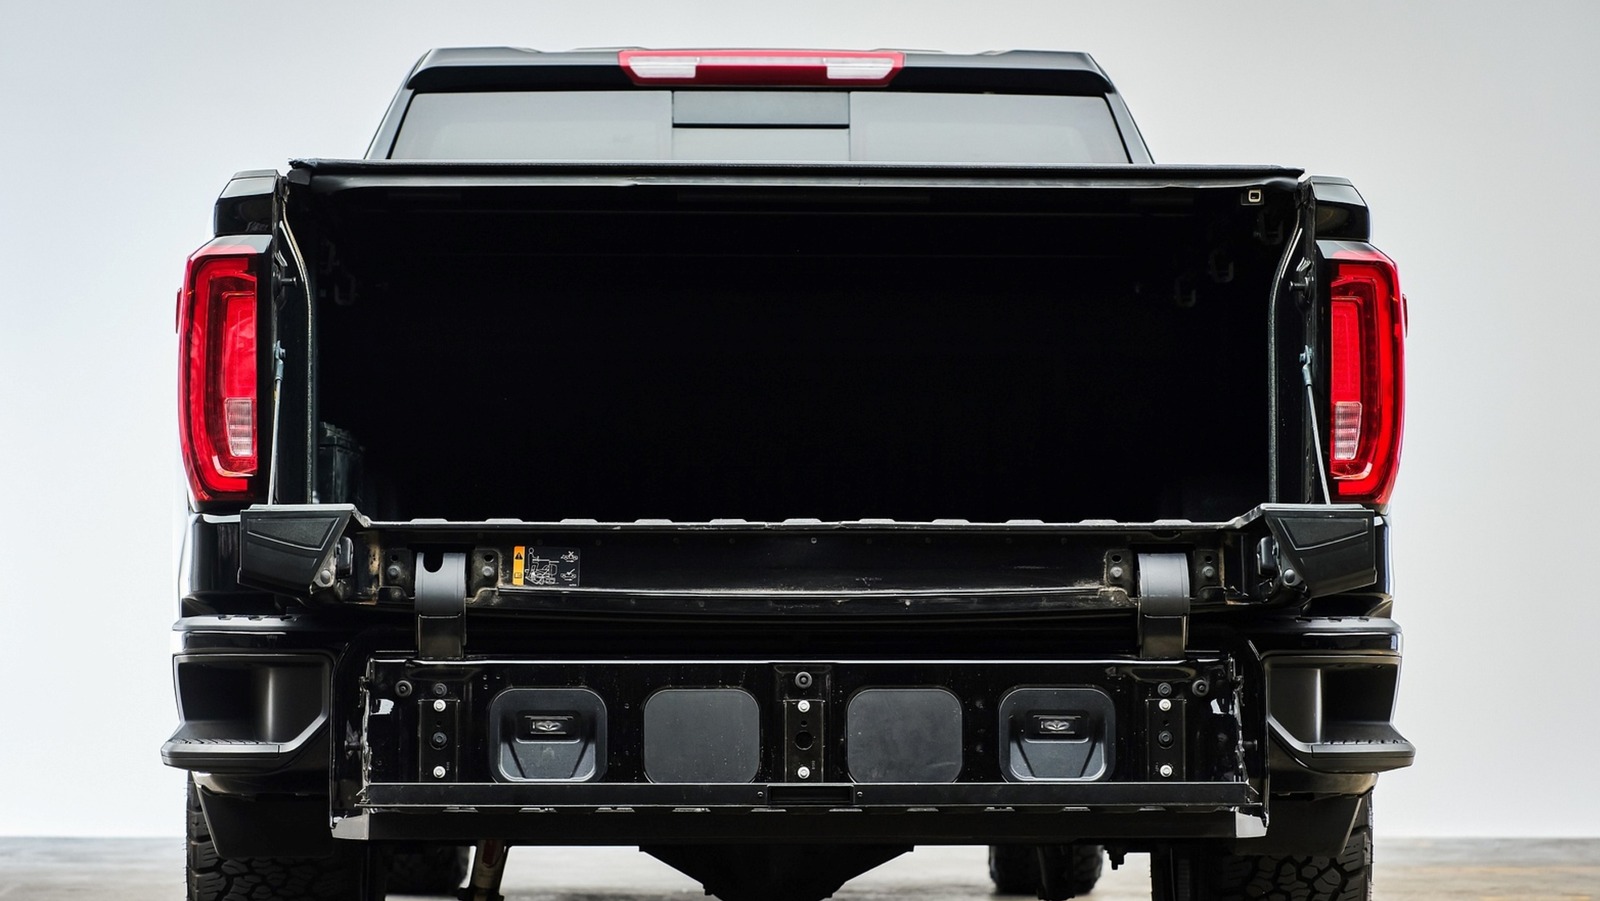 ۵ دلیل که مدیران بار برای داشتن لوازم جانبی تخت کامیون عالی هستند